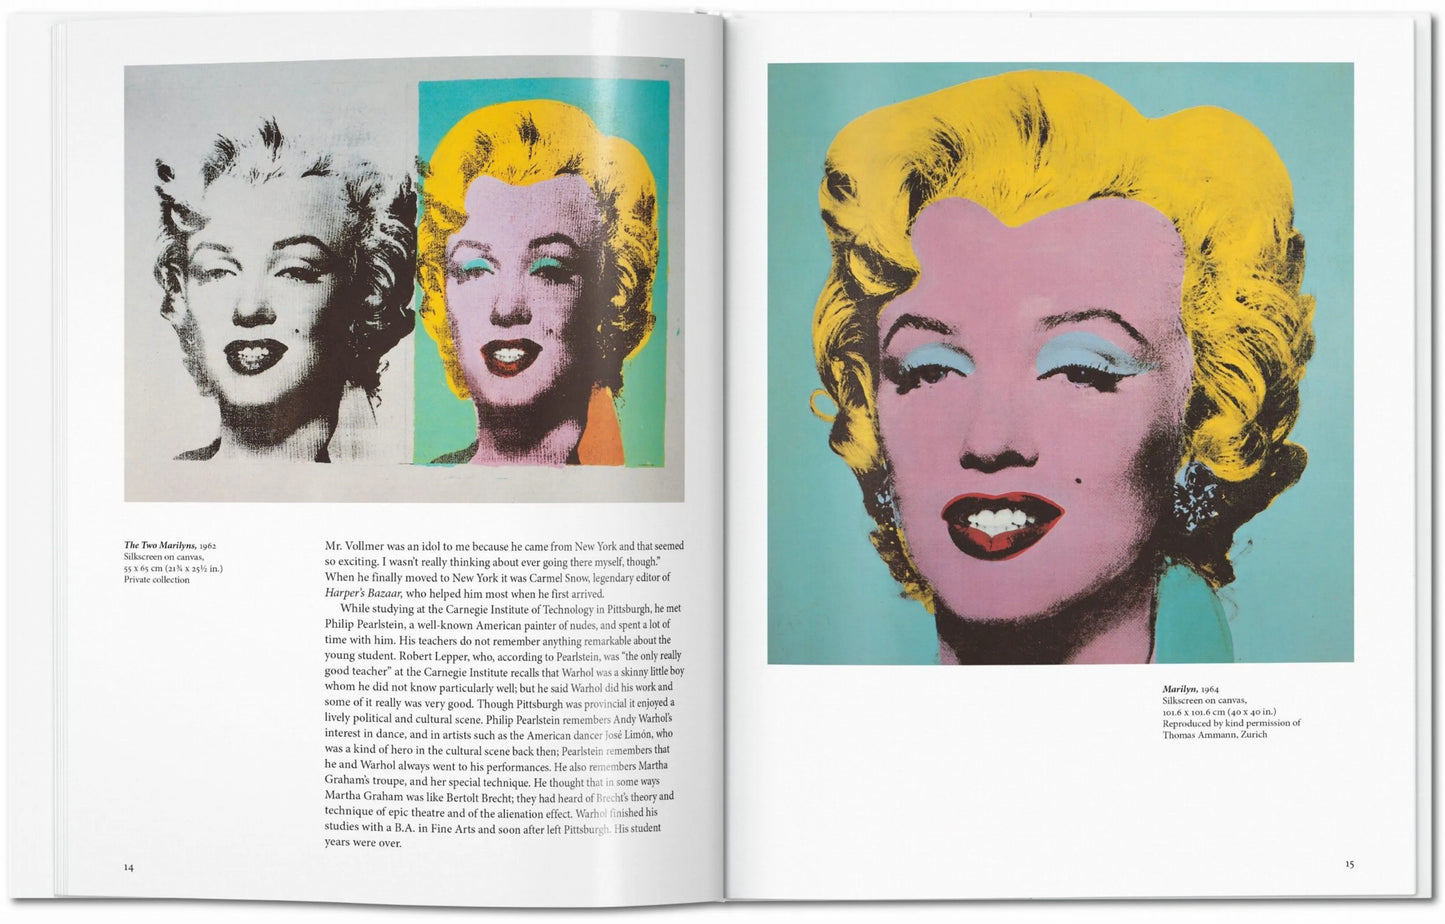 Taschen Warhol Book